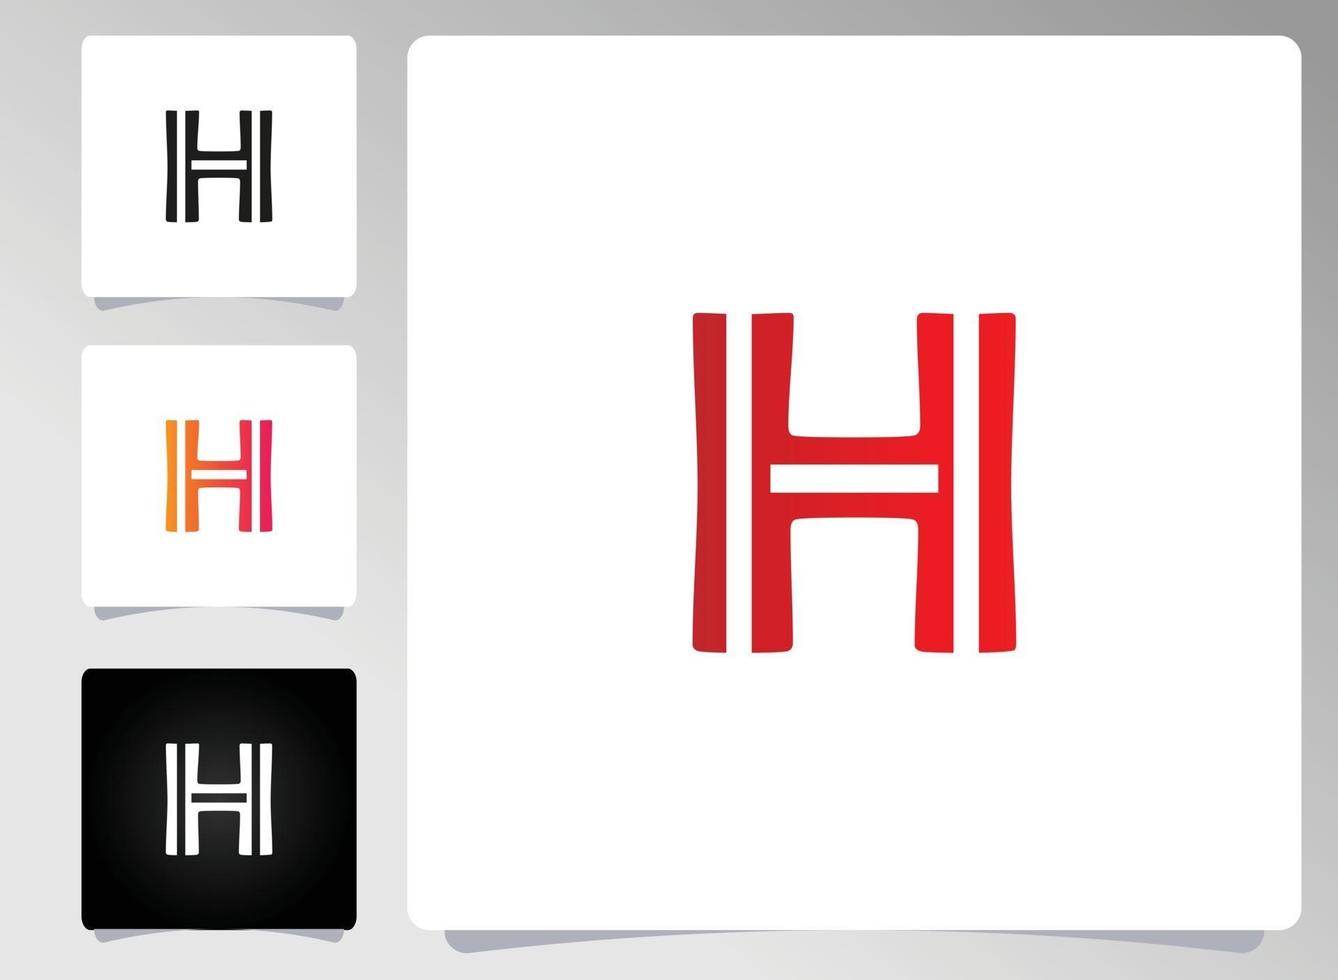 diseño abstracto del logotipo de la letra h vector